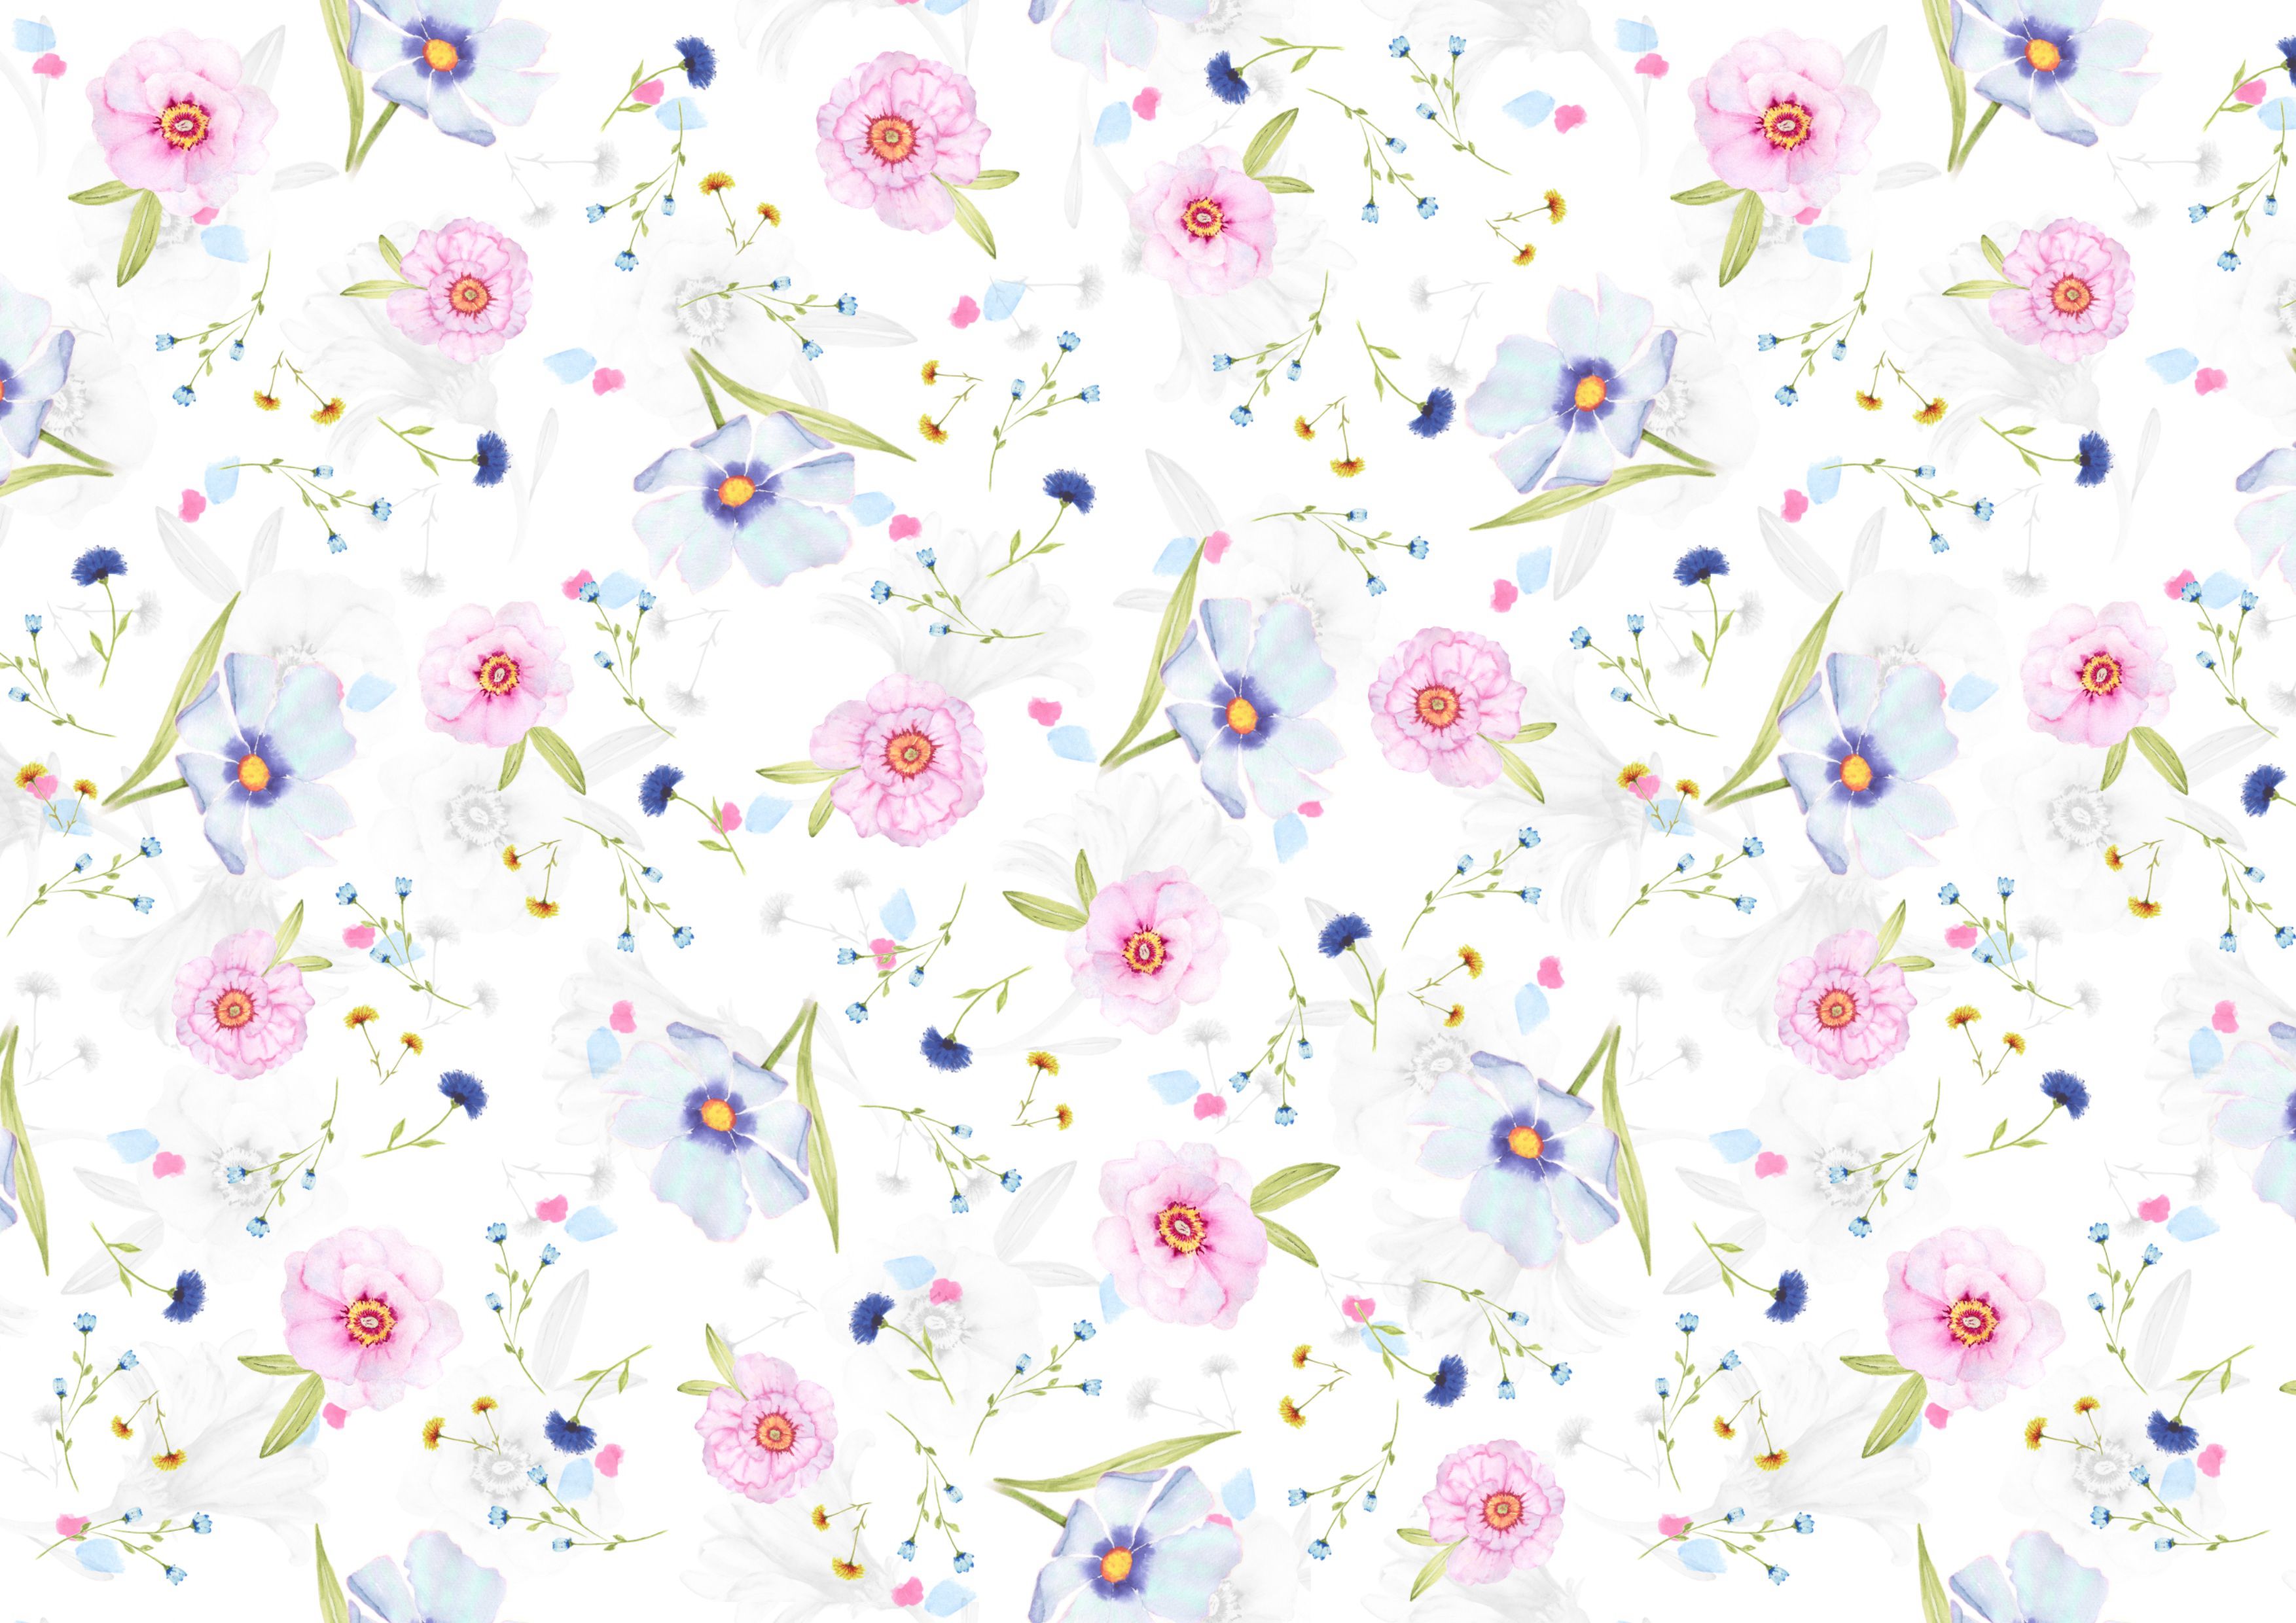 印花花布，画布，壁纸，粉蓝相间的创意雏菊背景美图第1张图片